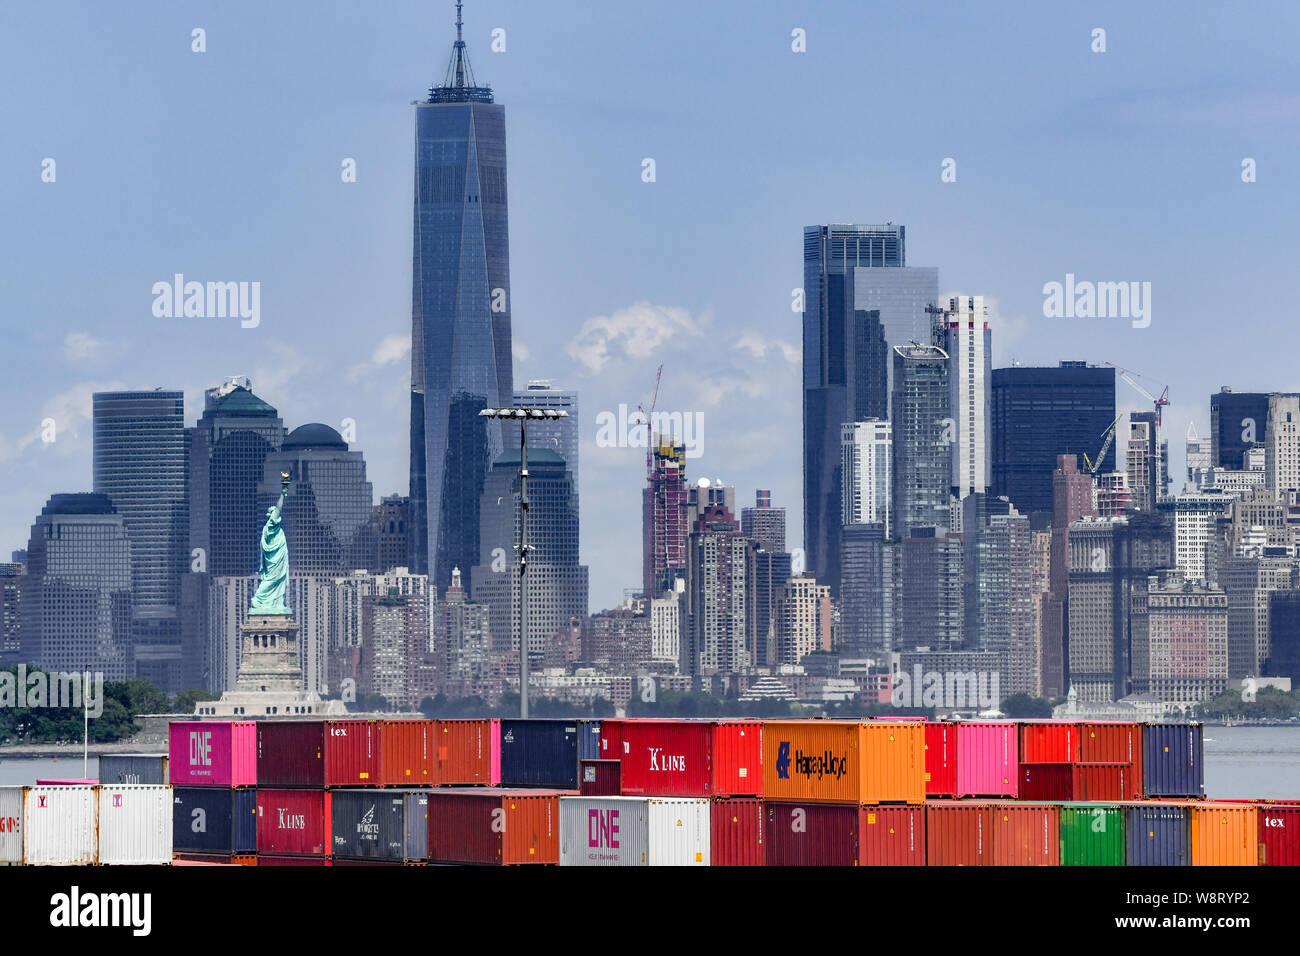 United States Trade Krieg Tarife - Freiheitsstatue Cargo Container und Skyline von New York City - United States tarif Krieg mit China - Freedom Tower Stockfoto